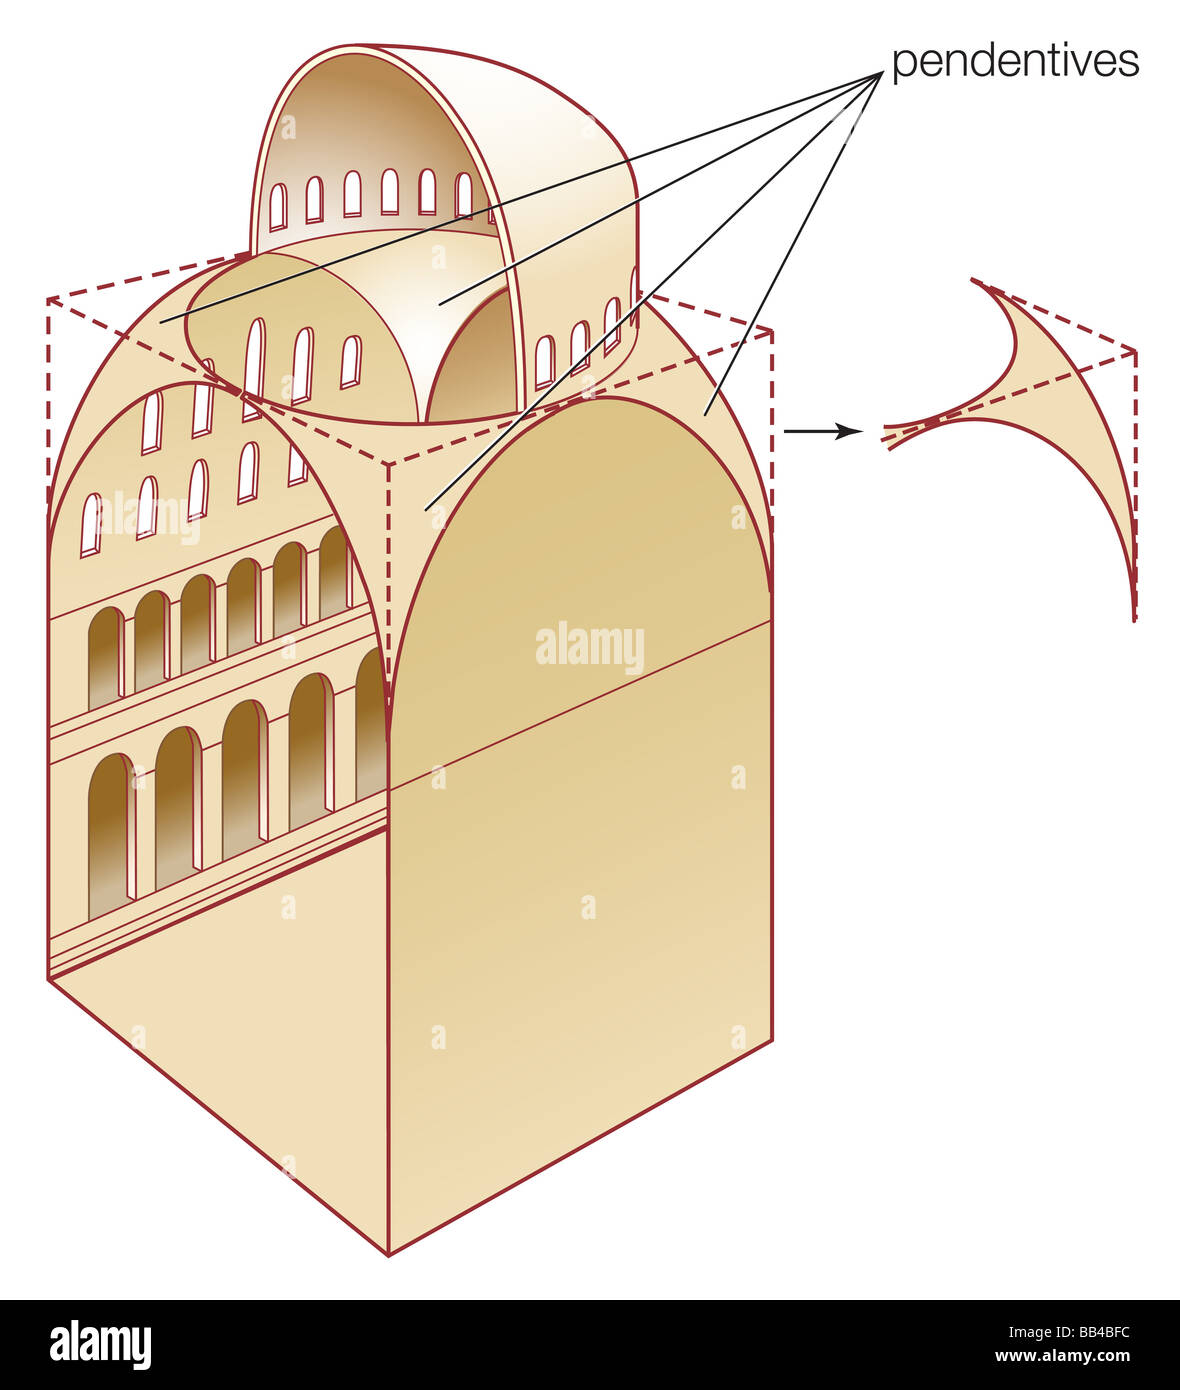 Eine Kuppel der Hagia Sophia, Istanbul während des 6. Jahrhunderts erbaute fushia Bau Veranschaulichung. Stockfoto